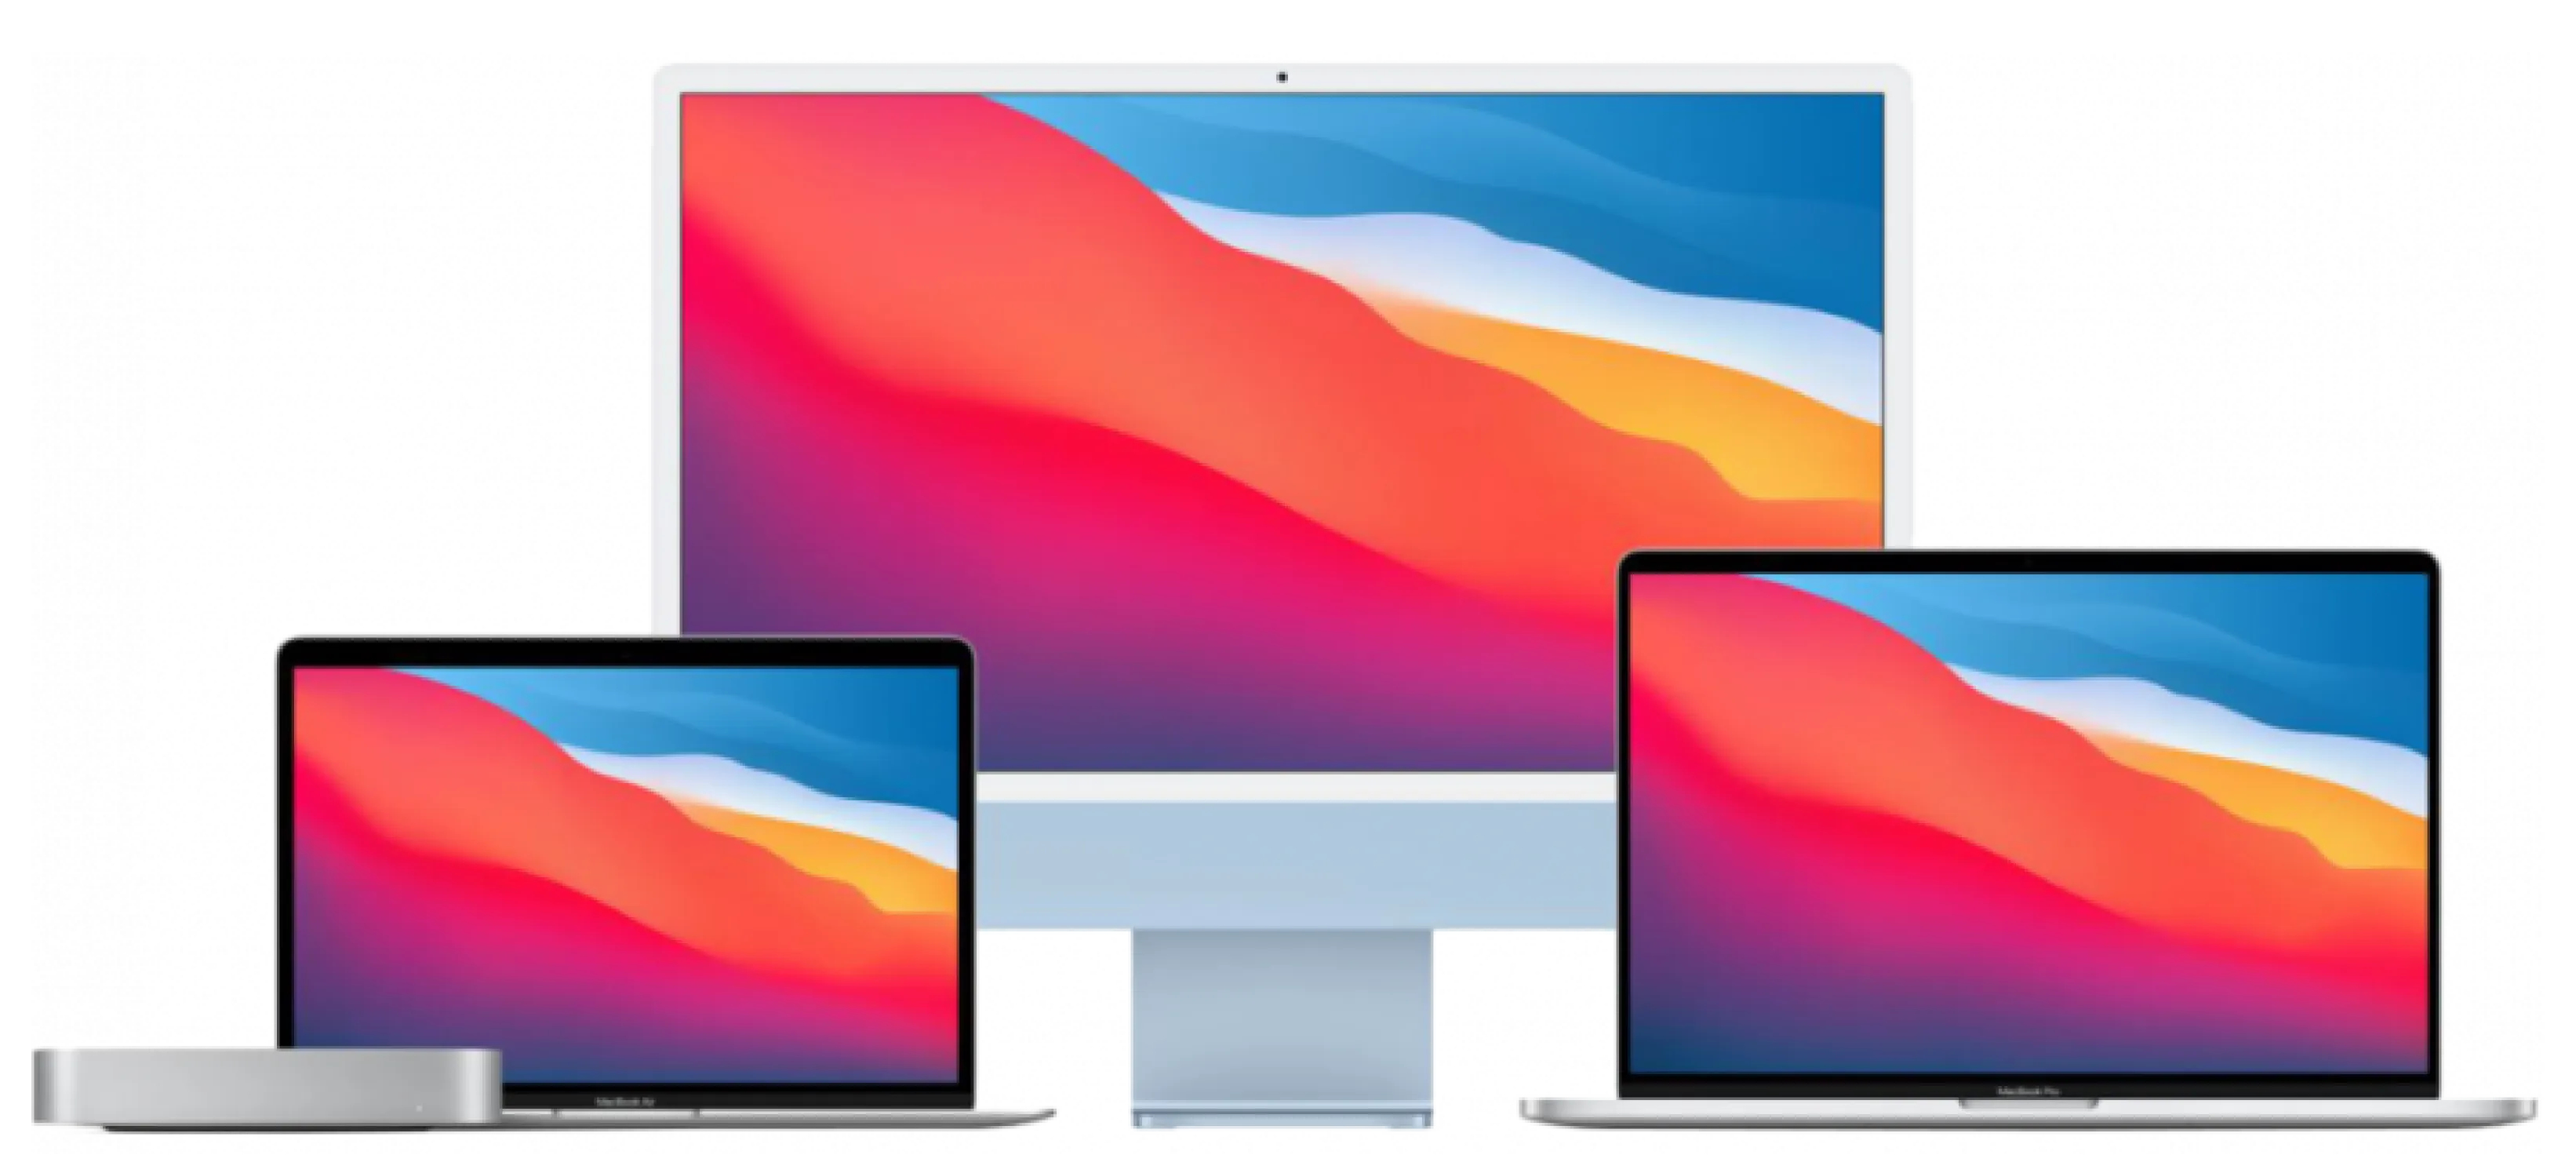 Imagem de um Mac